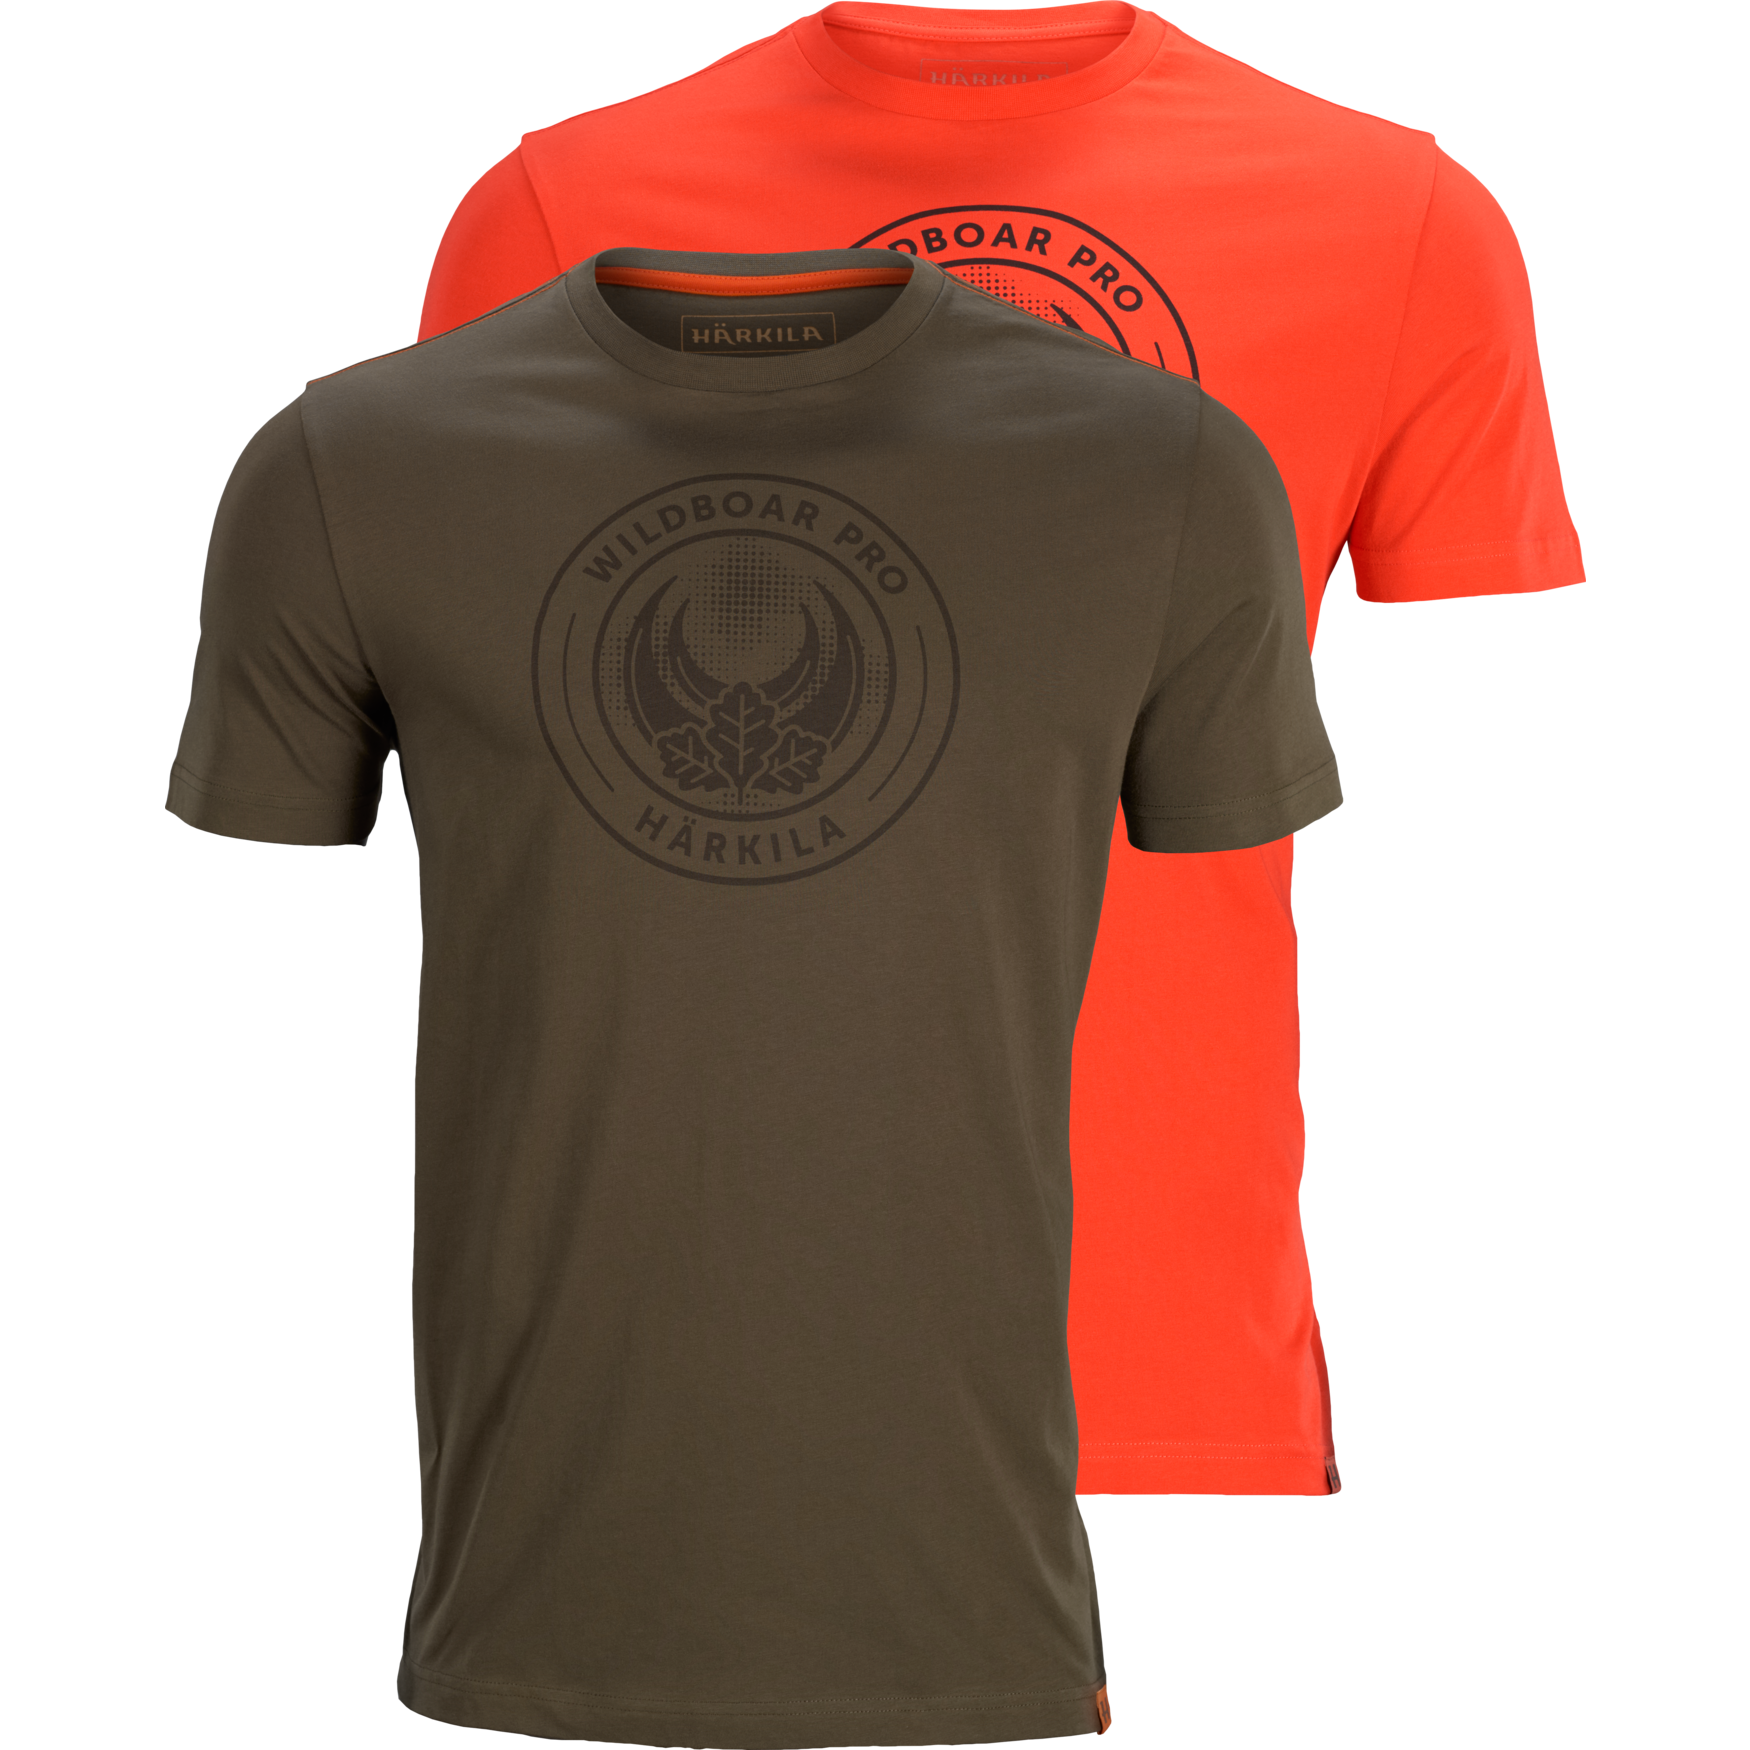 Pánske dvoj-balenie tričiek Härkila Wildboar Pro S/S – Willow Green, Orange - limitovaná edícia   XL